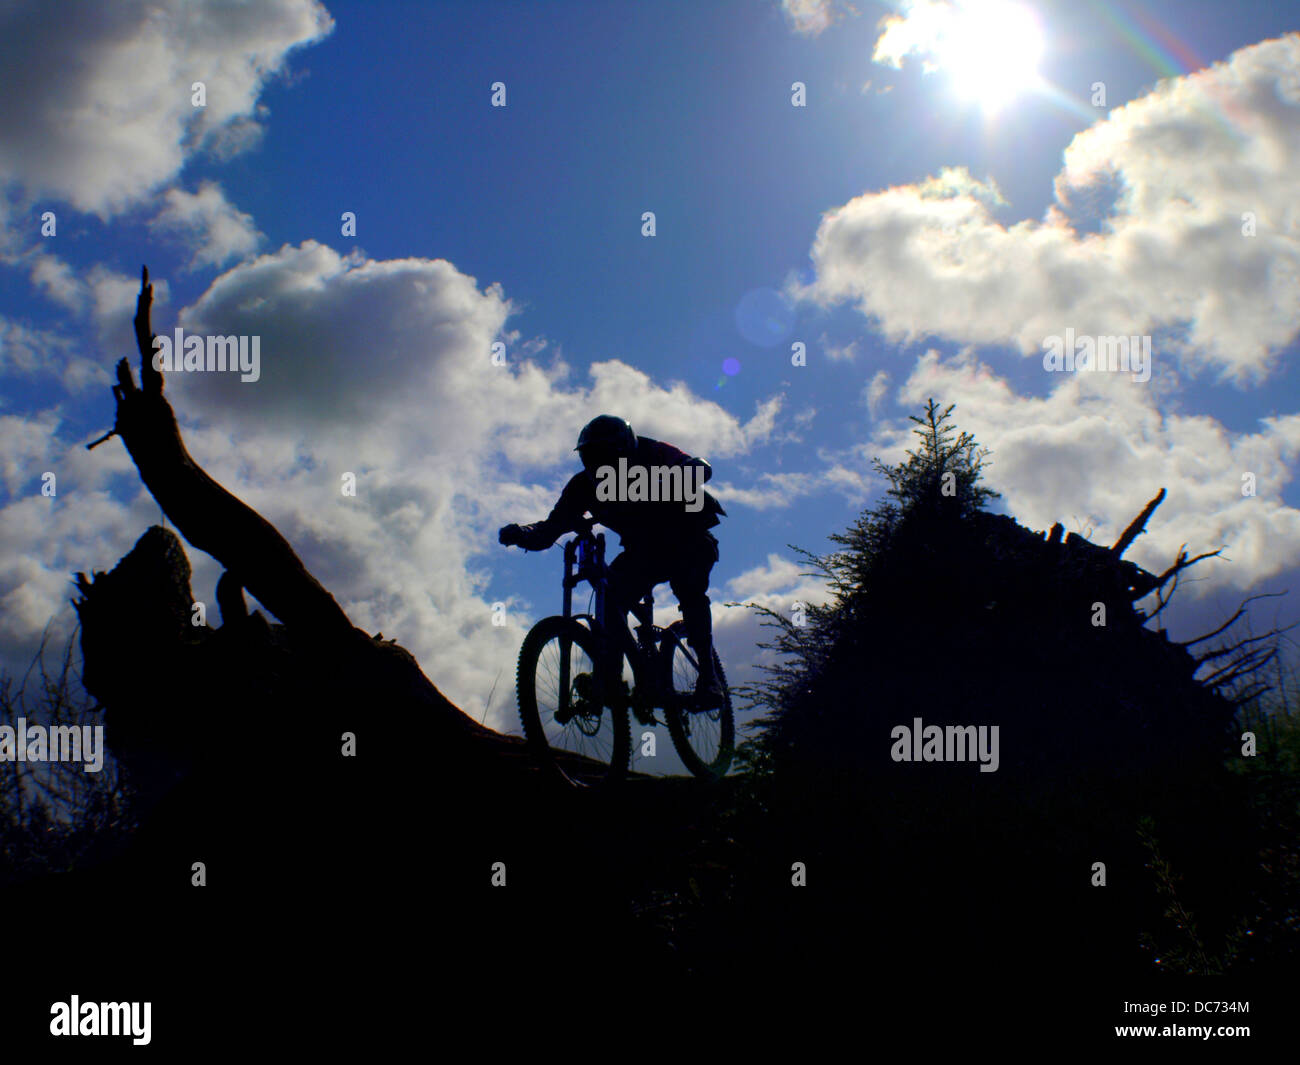 Vélo de montagne équitation sur la silhouette des arbres morts Banque D'Images